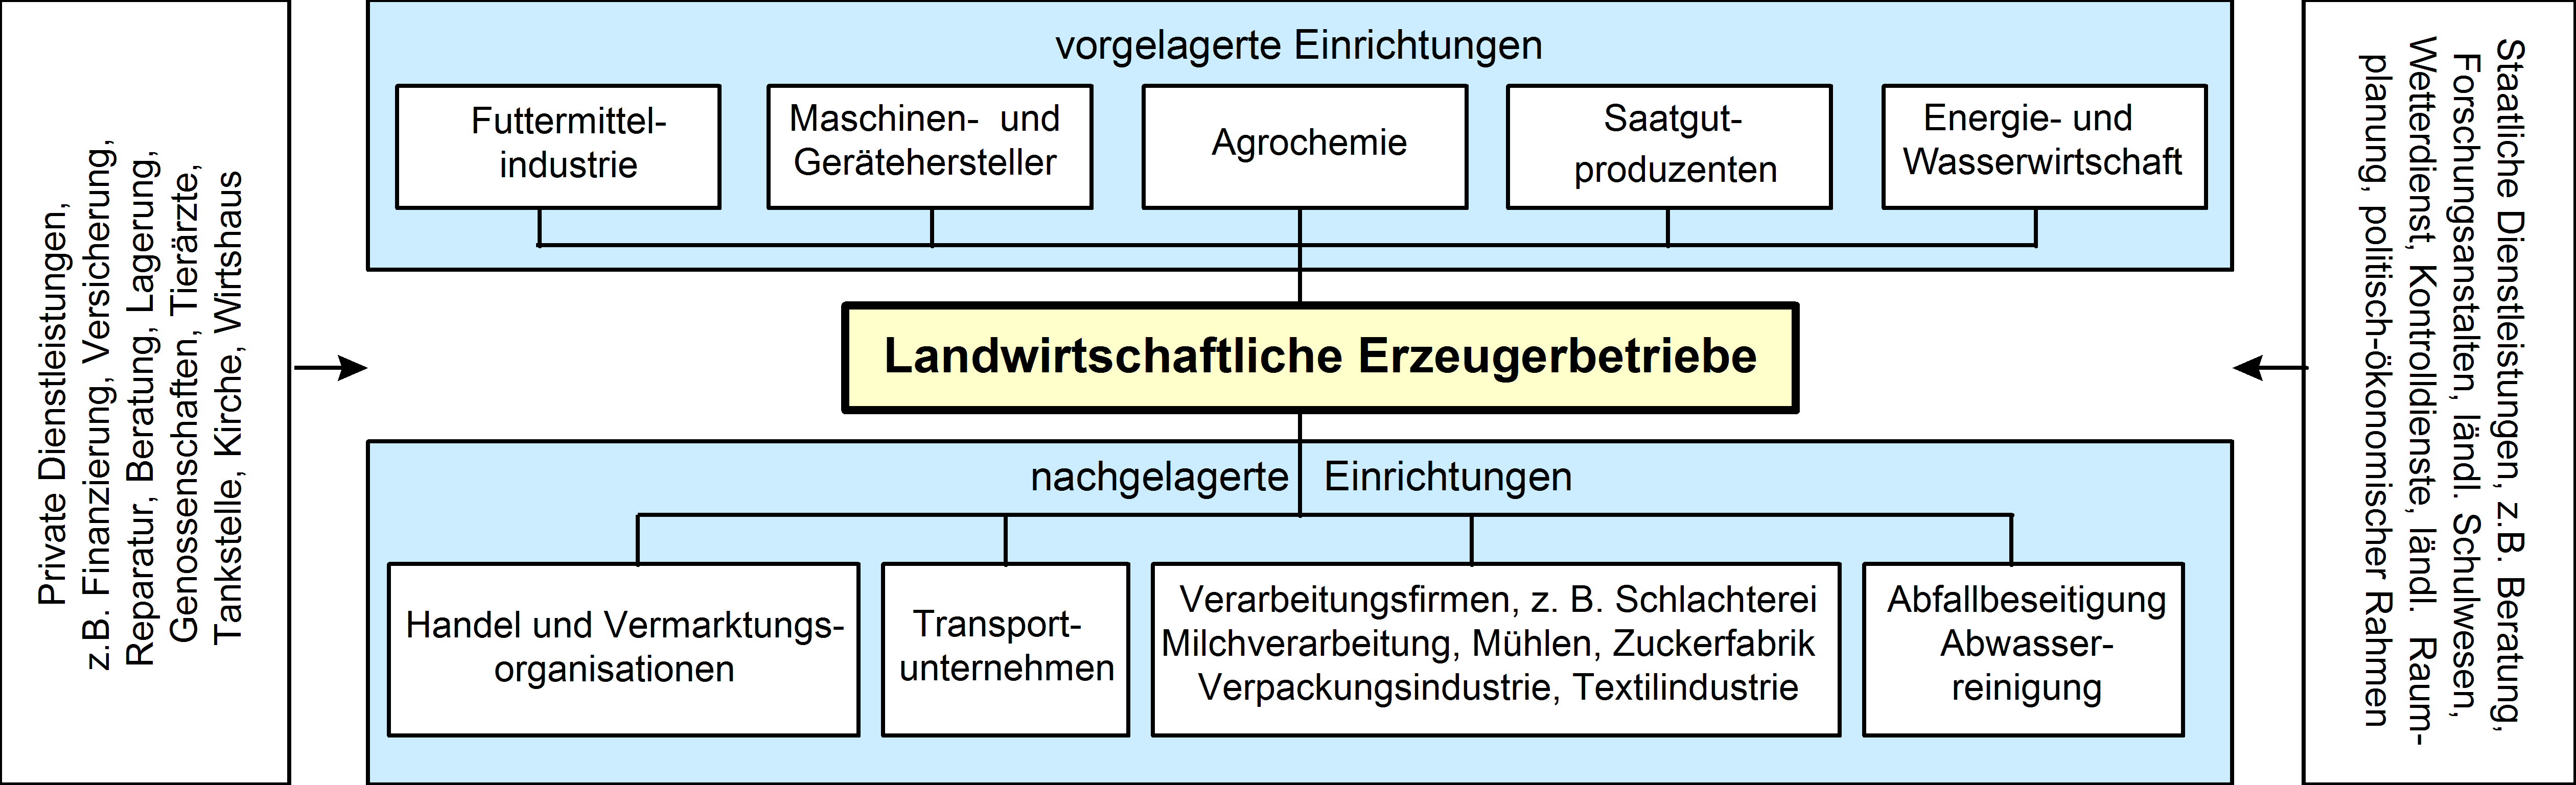 Vereinfachte Darstellung des Agrarsystems in Industrieländern